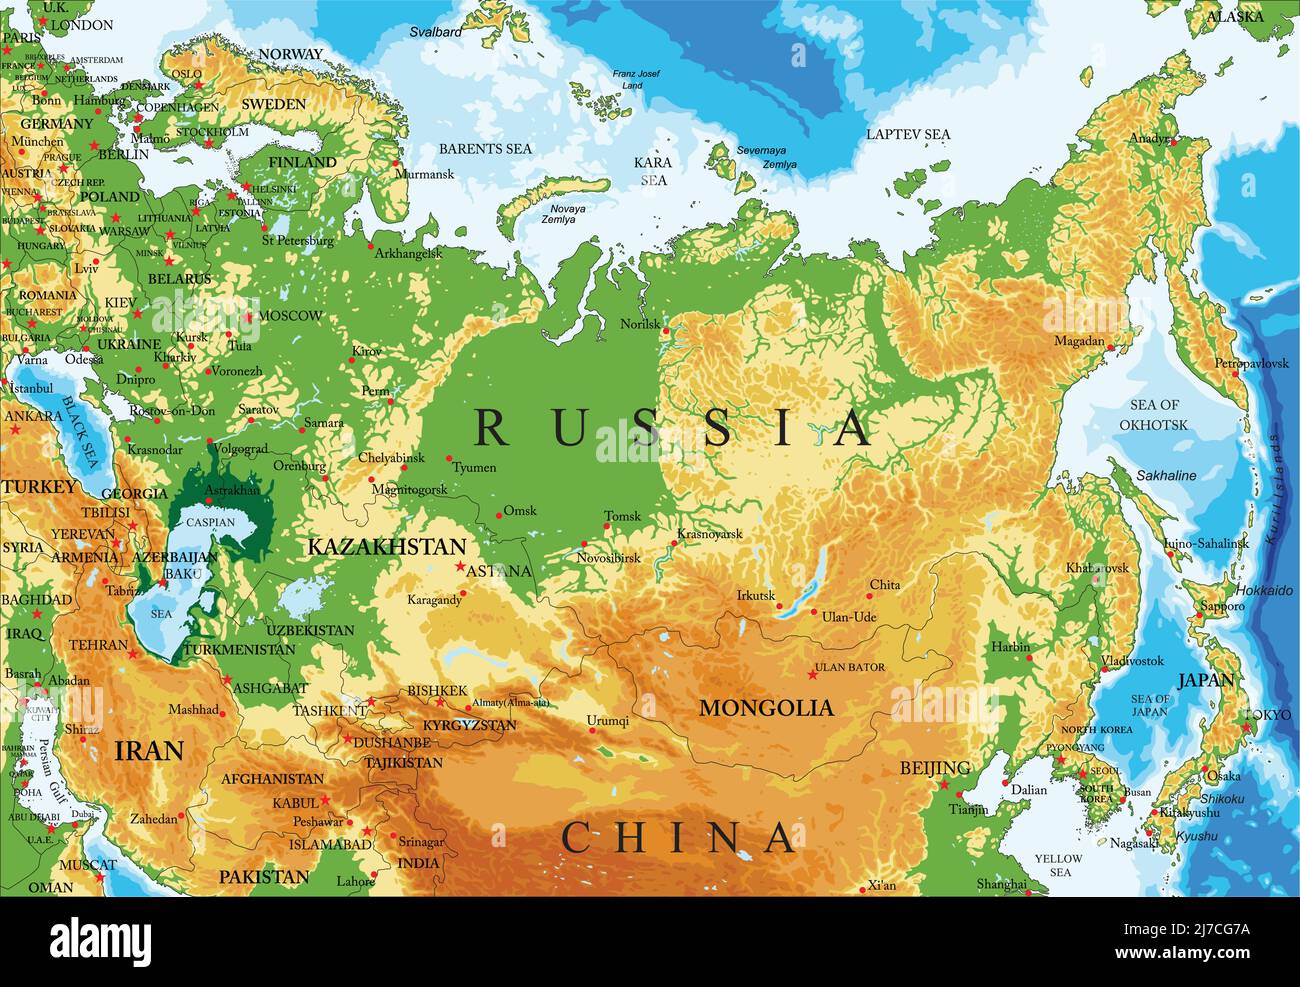 Sehr Detaillierte Physische Karte Von Russland Im Vektorformat Mit Allen Reliefformen 2542